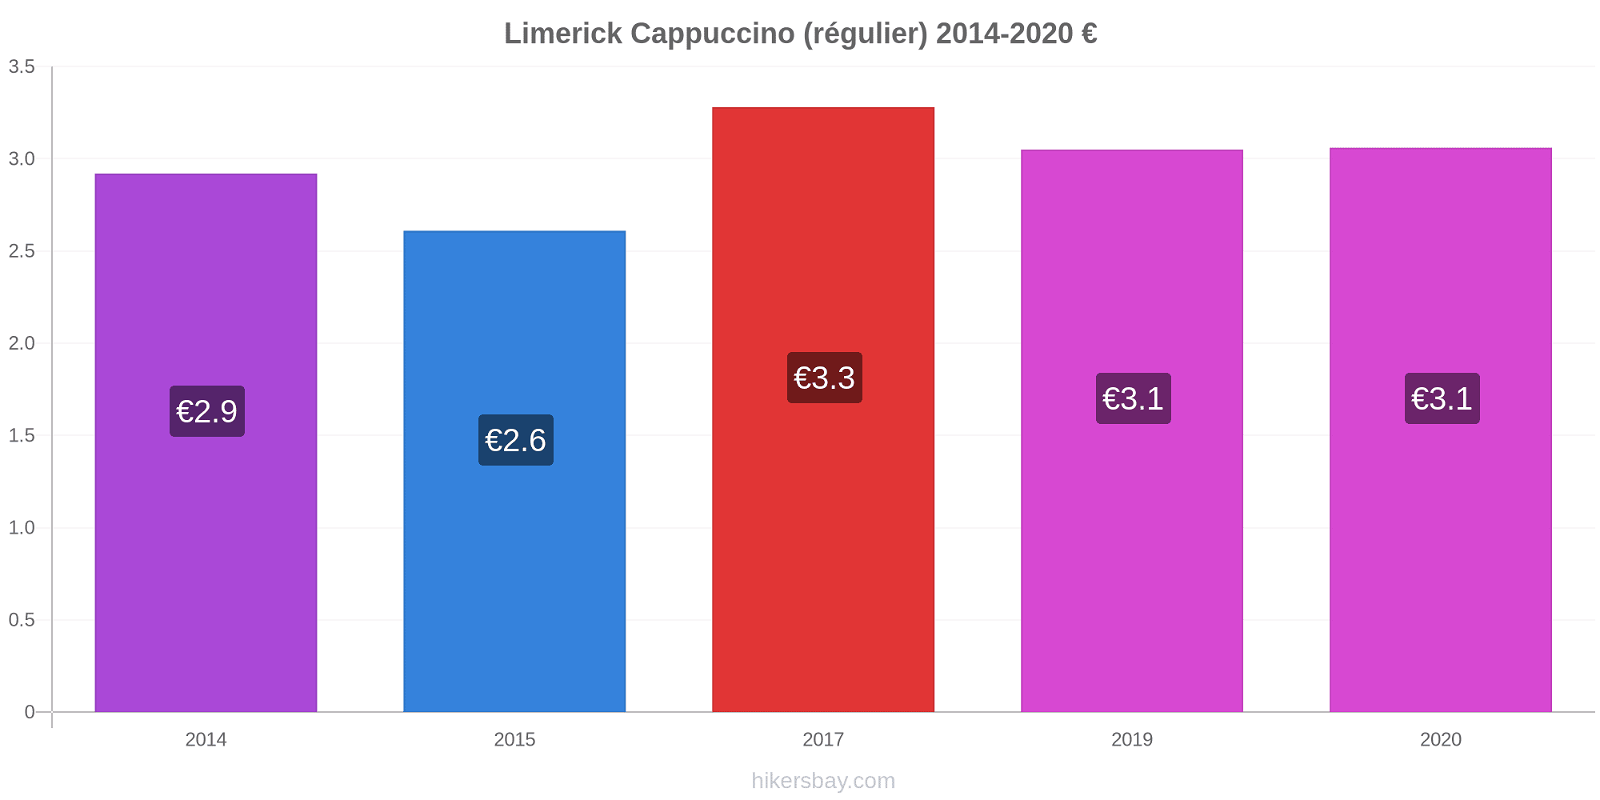 Limerick changements de prix Cappuccino (régulier) hikersbay.com